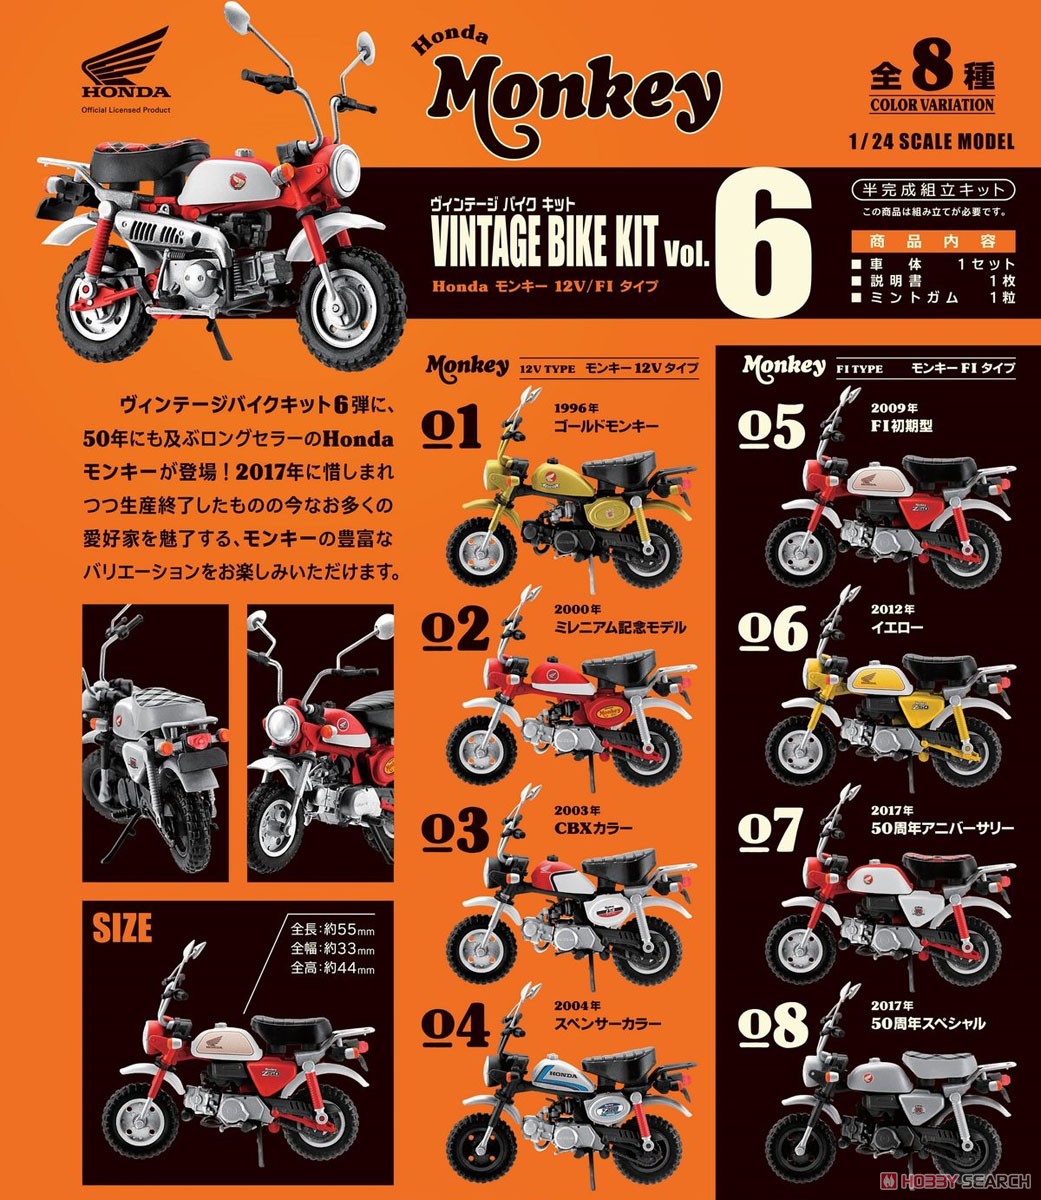 【食玩】1/24 ヴィンテージ バイクキット Vol.6『Honda モンキー 12V/F1』食玩プラモデル 10個入りBOX-013